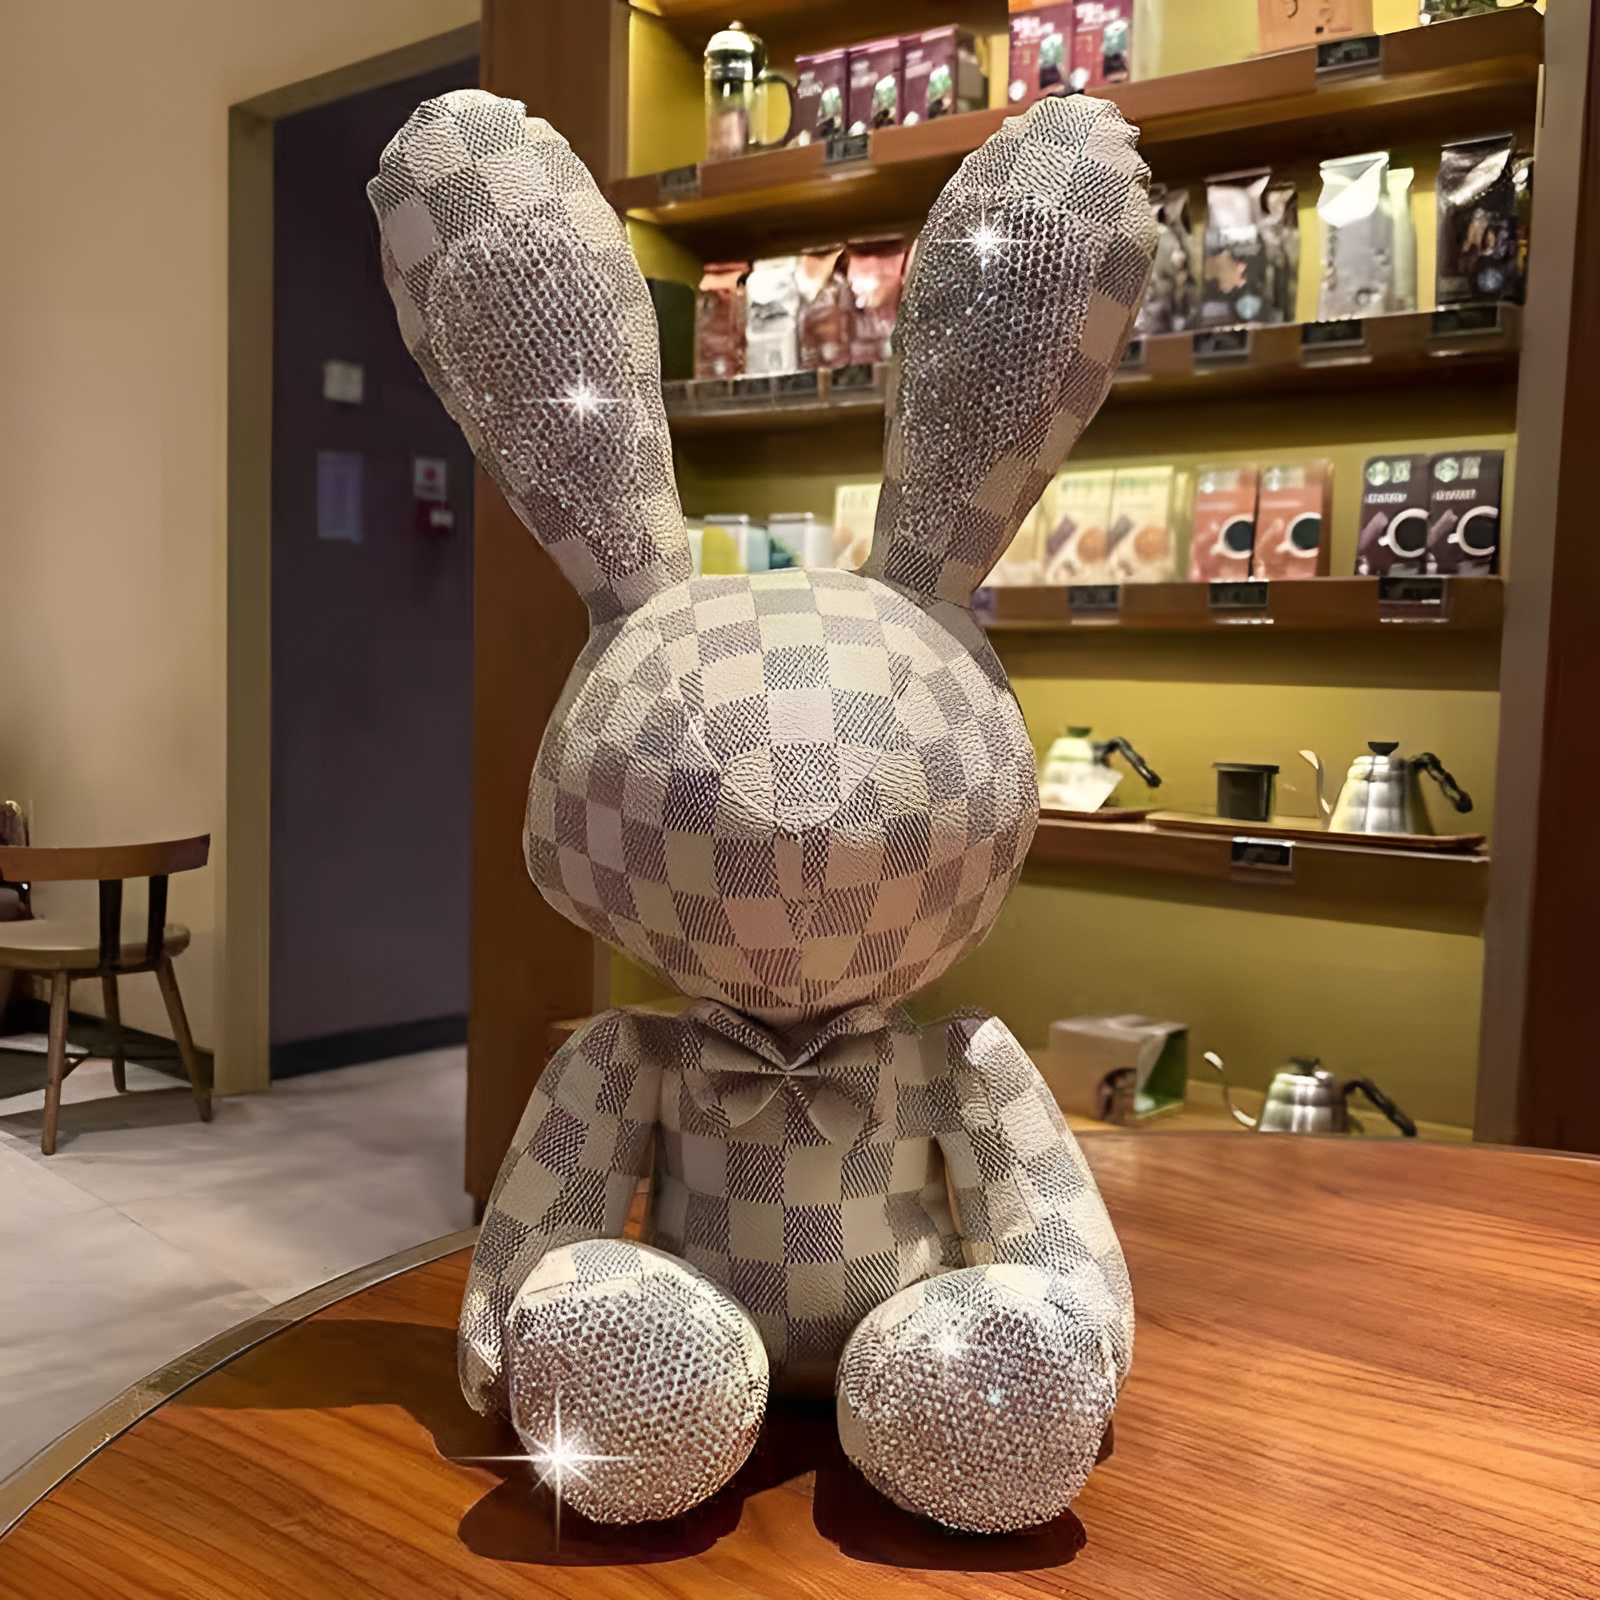 Conejo de Cuero Sintetico Exclusivo Detalles en piedras Tipo Swarovski –  Cosmo Girl Fashion